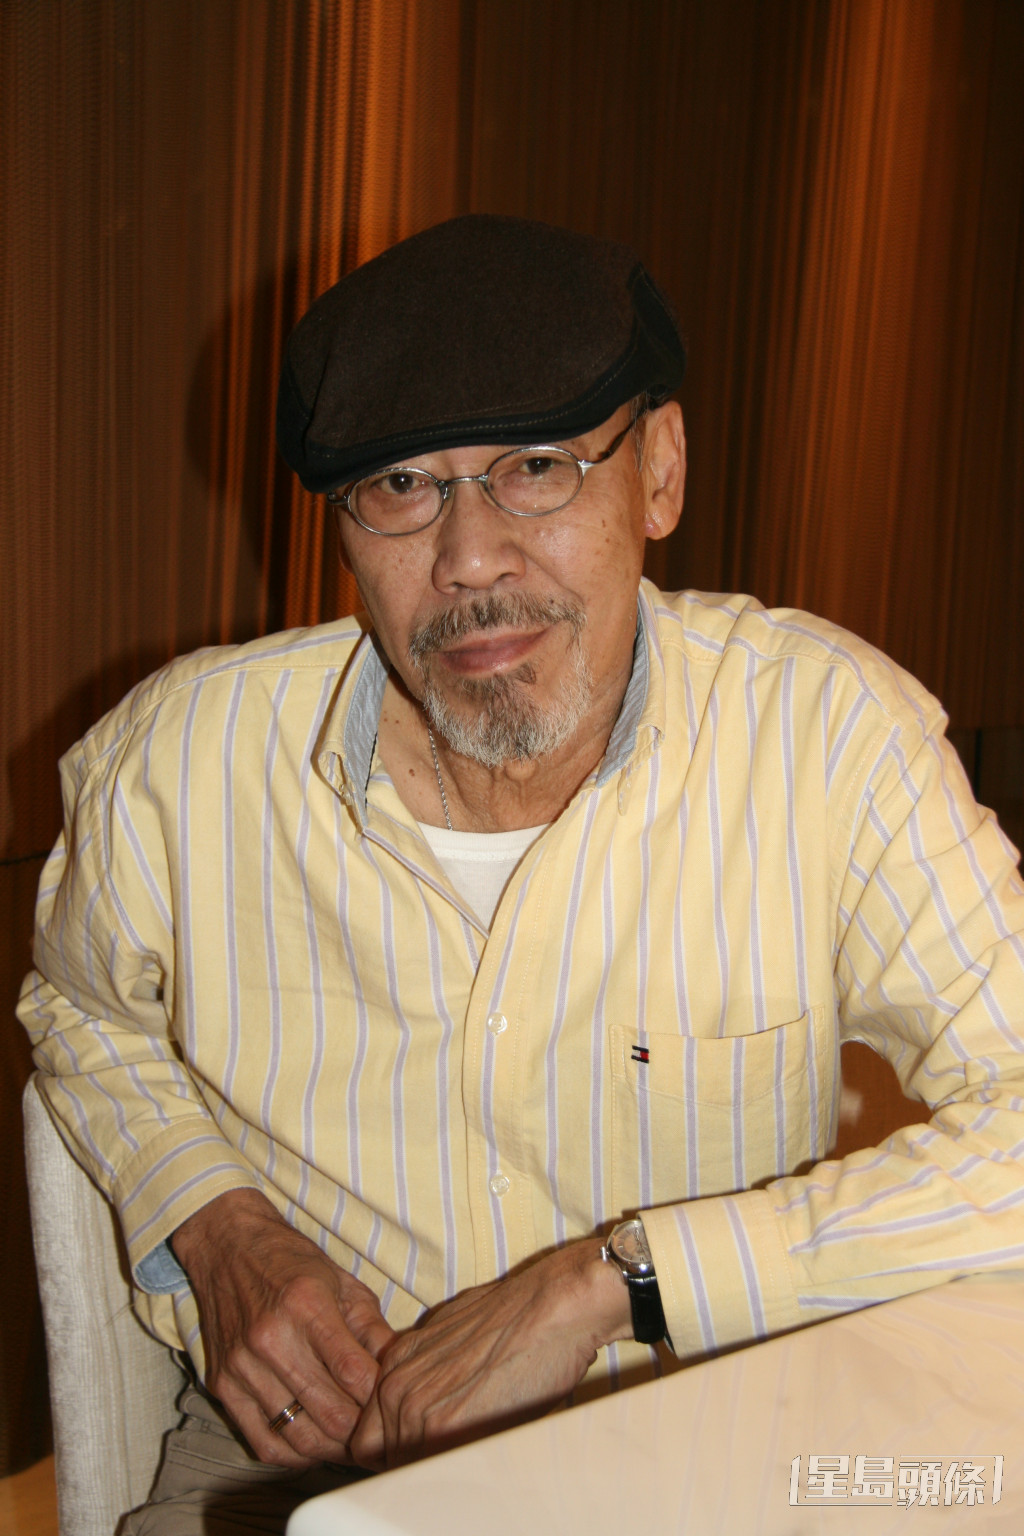 冯淬帆移居台湾36年。